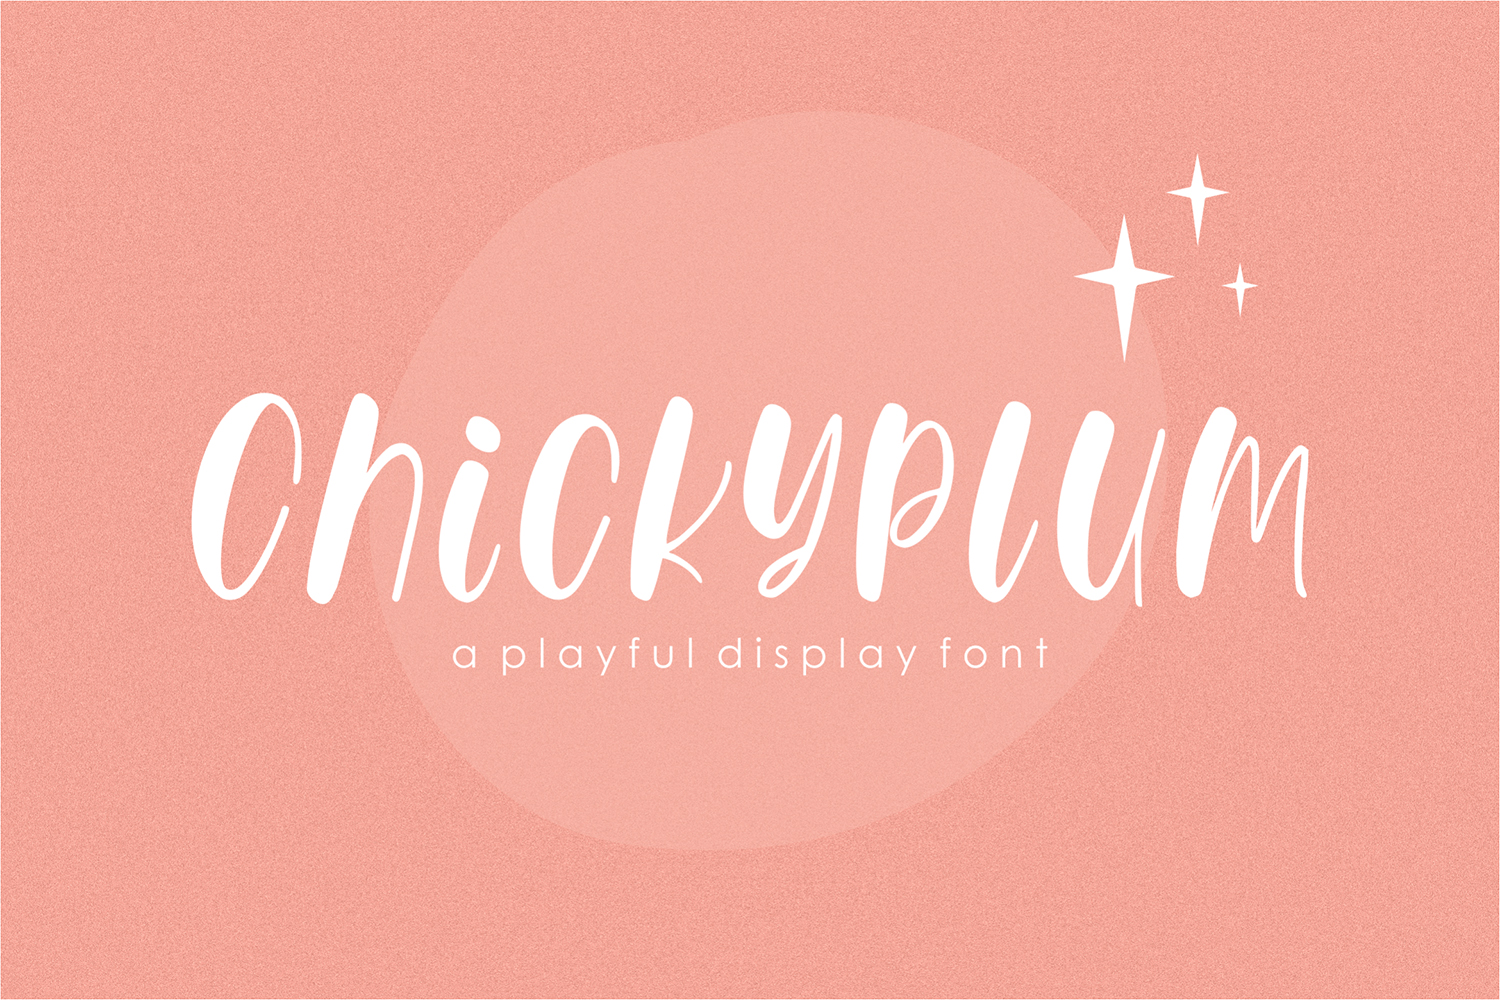 Chickyplum Free Font